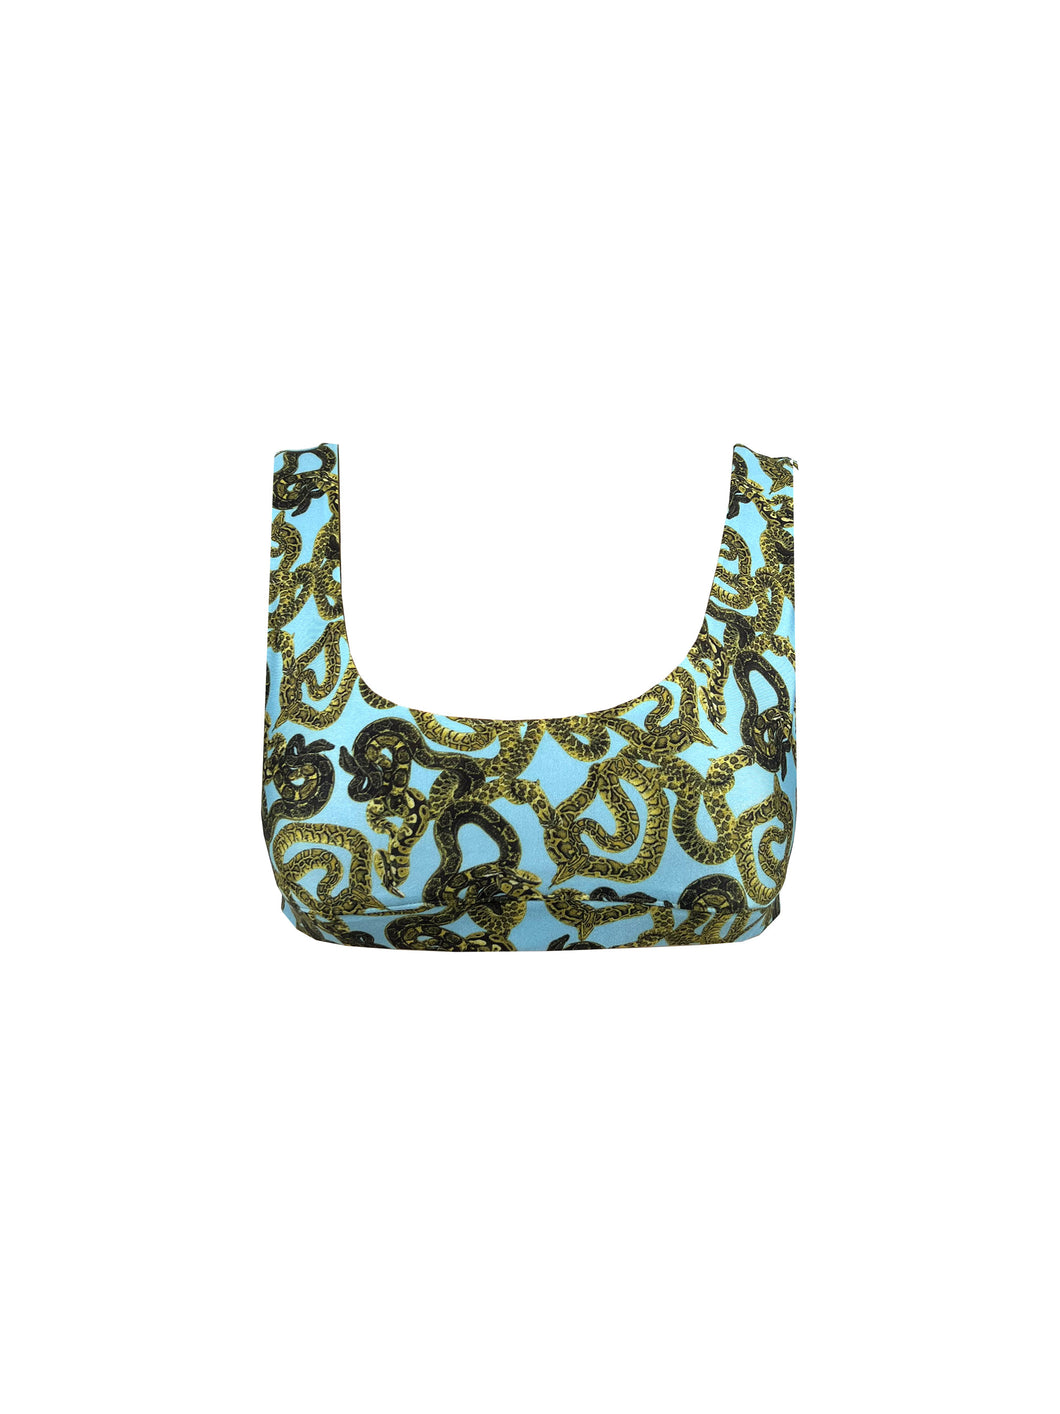 Snake Print Bralette - Turquoise